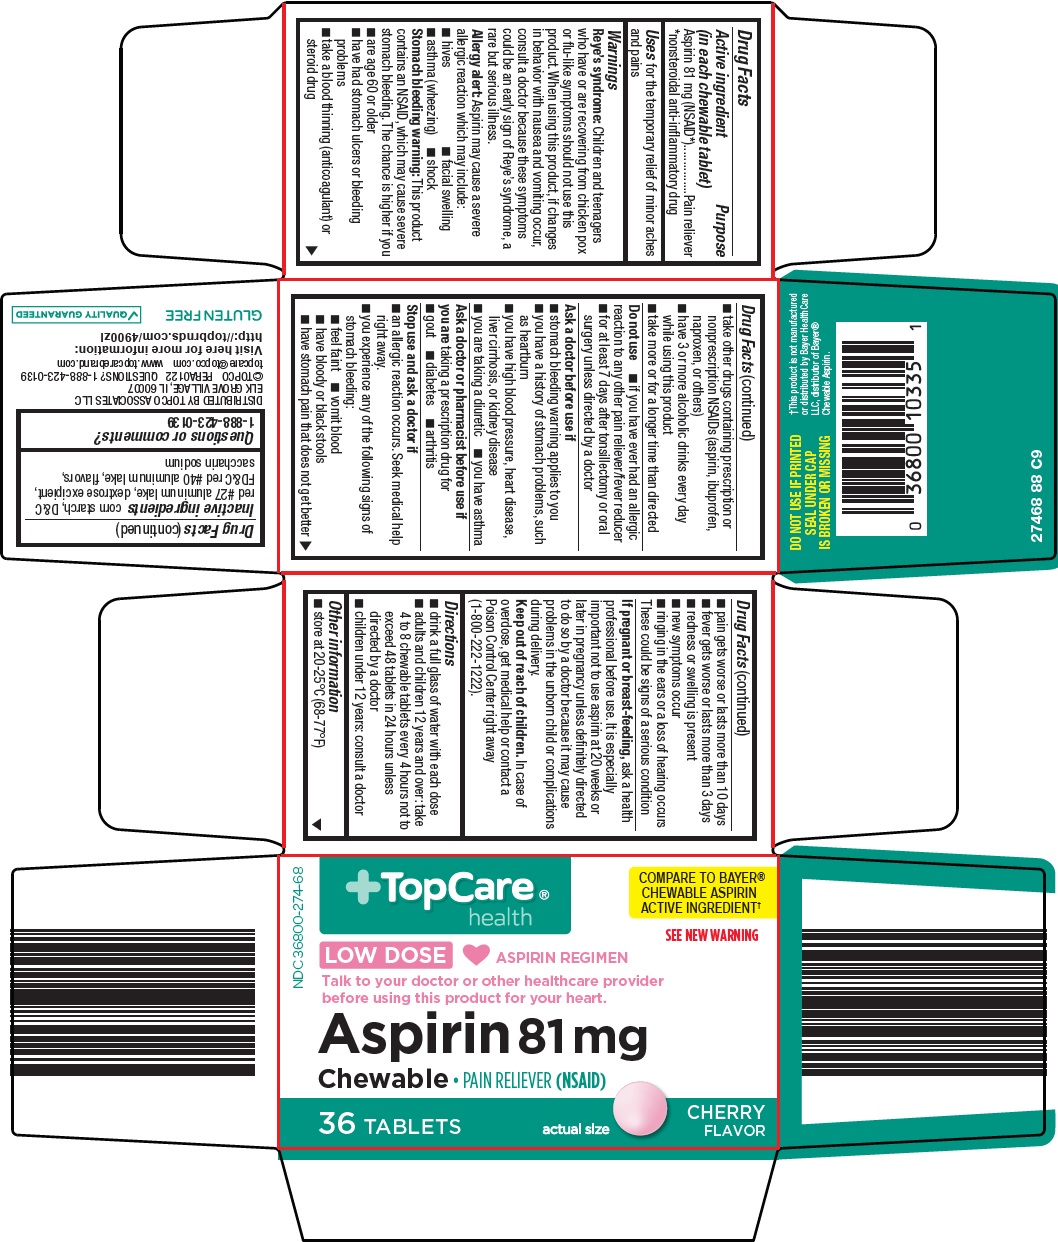 274-88-aspirin